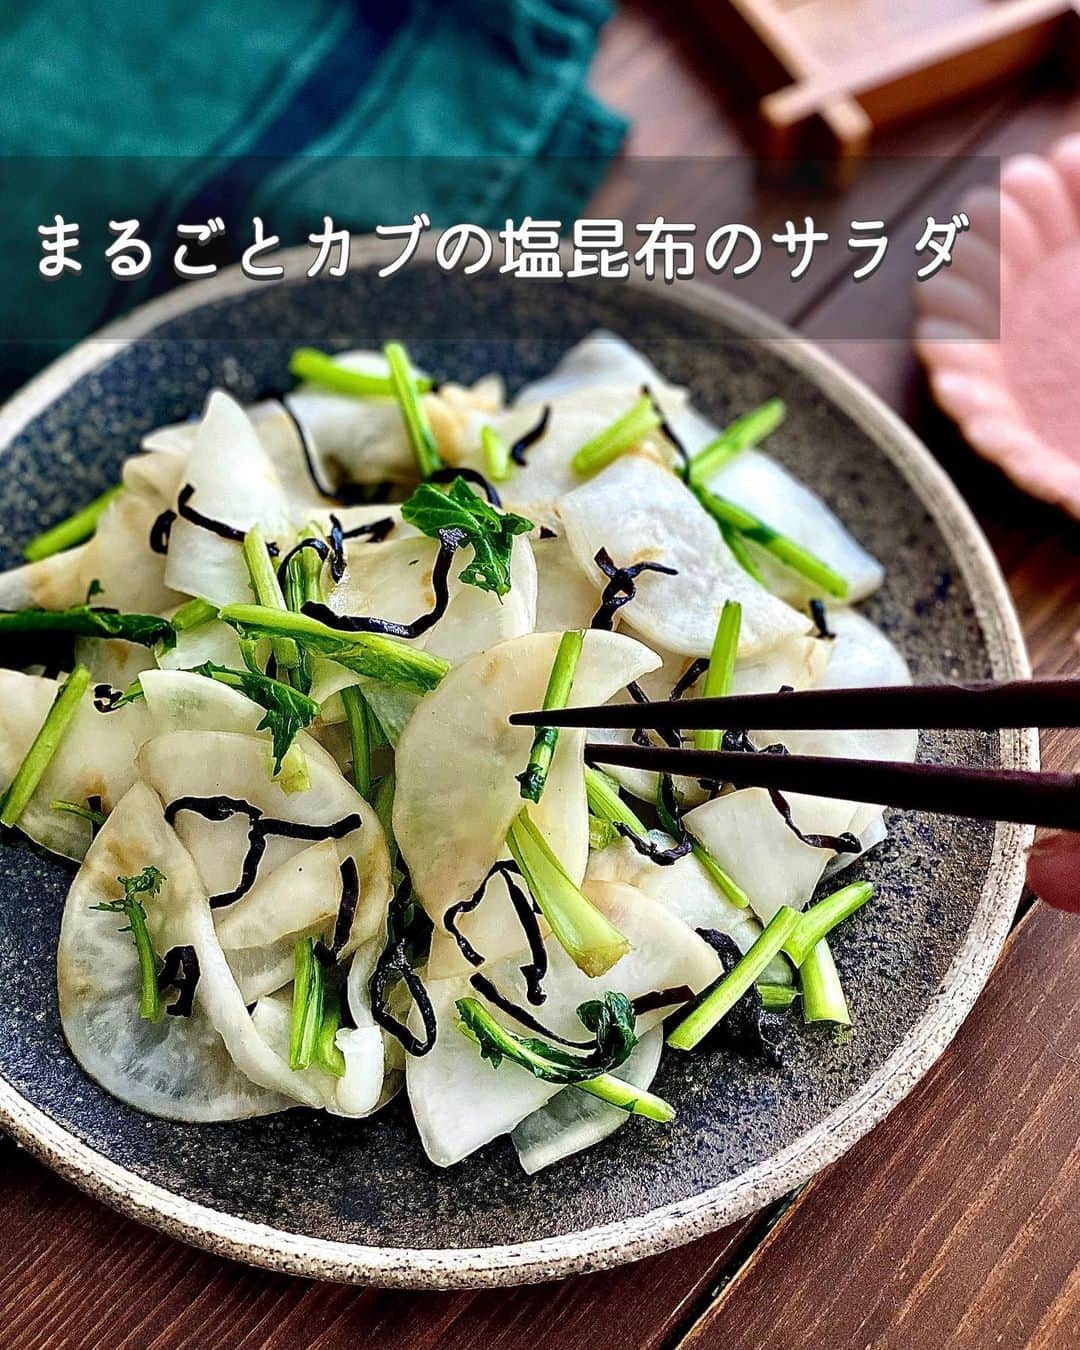 ちおりのインスタグラム：「【かぶって美味しいよね✨】 ⁡ ⁡ 他のレシピを見る→ @chiori.m.m をチェック✅ ⁡ ⁡ ━︎━︎━︎━︎━︎━︎━︎━︎━︎━︎━︎━︎━︎━︎ まるごとかぶの塩昆布サラダ🌱 ━︎━︎━︎━︎━︎━︎━︎━︎━︎━︎━︎━︎━︎━︎ ⁡ ⁡ こんにちは(^ ^) ⁡ 今日はフレッシュなかぶを まるごと使った副菜レシピです。 かぶの実は皮付きで、茎と葉もいただきます🙏 ⁡ 葉も美味しいですよね😊 ⁡ このレシピ 作りたてを食べると かぶのフレッシュさが感じられてサラダ感覚。 時間が経つと塩昆布の旨みが広がって 浅漬けとしてお召し上がりいただけます🌱 ⁡ わたしは作りたてが好きで夫は浅漬け派…笑 ⁡ ちょっと渋いけど麦飯にも合うんです^ ^ 良かったら作ってみてください！ ⁡ ⁡ ________________________________________ ⁡ ⁡ ✍︎ ✍︎recipe ✍︎ ✍︎ ⁡ ⁡ 👩‍🌾【材料】2人分 •かぶ…………2個（約250g） •塩昆布………10g A酢……………………小さじ1 A砂糖、ごま油……各小さじ1/2 A和風だしの素……ふたつまみ ⁡ ⁡ ________________________________________ ⁡ ⁡ ⁡ 👩‍🍳【作り方】 ❶かぶは洗って皮ごと縦半分に切ってから2〜3㎜厚さの薄切りにする。茎と葉の部分は2㎝長さに切る。 ⁡ ❷ボウルにかぶの実、茎、葉を入れて塩小さじ1/2（分量外）をふりよく混ぜる。10分おいて水気を絞る。 ⁡ ❸塩昆布と【A】を入れて混ぜ合わせる。すぐに食べるならサラダ感覚で。30分以上おくと浅漬けとしてお召し上がりいただけます。 ⁡ ⁡ ________________________________________ ⁡ ⁡ ⁡ 📝【POINT】 •かぶは皮をむいてもOKです。 ⁡ •和風だしの素はお好みで増やしてください。 ⁡ •辛味を加えたい場合は仕上げに一味唐辛子をかけてください。 ⁡ •日持ちは冷蔵で2〜3日です。 ⁡ ⁡ ⁡ ︎≡︎≡︎≡︎≡︎≡︎≡︎≡︎≡︎≡︎≡︎≡︎≡︎≡︎≡︎≡︎≡︎≡︎≡︎≡︎≡︎≡︎≡︎≡︎≡︎≡︎≡︎≡︎≡︎≡︎≡︎≡︎ 【✅新刊レシピ本のお知らせ】 📕ちおり流くり返し作りたいおかず 🙇🏻‍♀️おかげ様で書籍累計10万部を突破しました。 ⁡ ⁡ 全国の書店、Amazon、楽天ブックス 宝島チャンネルにて発売中です。 ⁡ ➤ ➤ ➤ @chiori.m.m のストーリーハイライト。 プロフィールのリンクからご覧いただけます😊 📗ちおりの簡単絶品おかず１、２ 既刊もぜひご覧いただきたいです。 ⁡ ≡︎≡︎≡︎≡︎≡︎≡︎≡︎≡︎≡︎≡︎≡︎≡︎≡︎≡︎≡︎≡︎≡︎≡︎≡︎≡︎≡︎≡︎≡︎≡︎≡︎≡︎≡︎≡︎≡︎≡︎≡︎≡︎≡︎≡︎ ⁡ ⁡ ⁡ 最後までご覧いただきありがとうございます！ ⁑ ⁑ ⁑ ⁑ ⁑ ⁑ ⁑ ⁑ #サラダレシピ #かぶ #かぶレシピ   #Nadiaレシピ #Nadiaartist  #japanesefood   #食卓 #献立 #簡単ごはん #レシピ  #簡単レシピ #節約レシピ #時短レシピ  #日々の暮らし #作り置きレシピ   #夕飯レシピ #お弁当レシピ  #副菜レシピ  #料理初心者  #おつまみレシピ #副菜  #作り置き #料理レシピ #定番レシピ   #野菜レシピ #浅漬け #浅漬けレシピ」